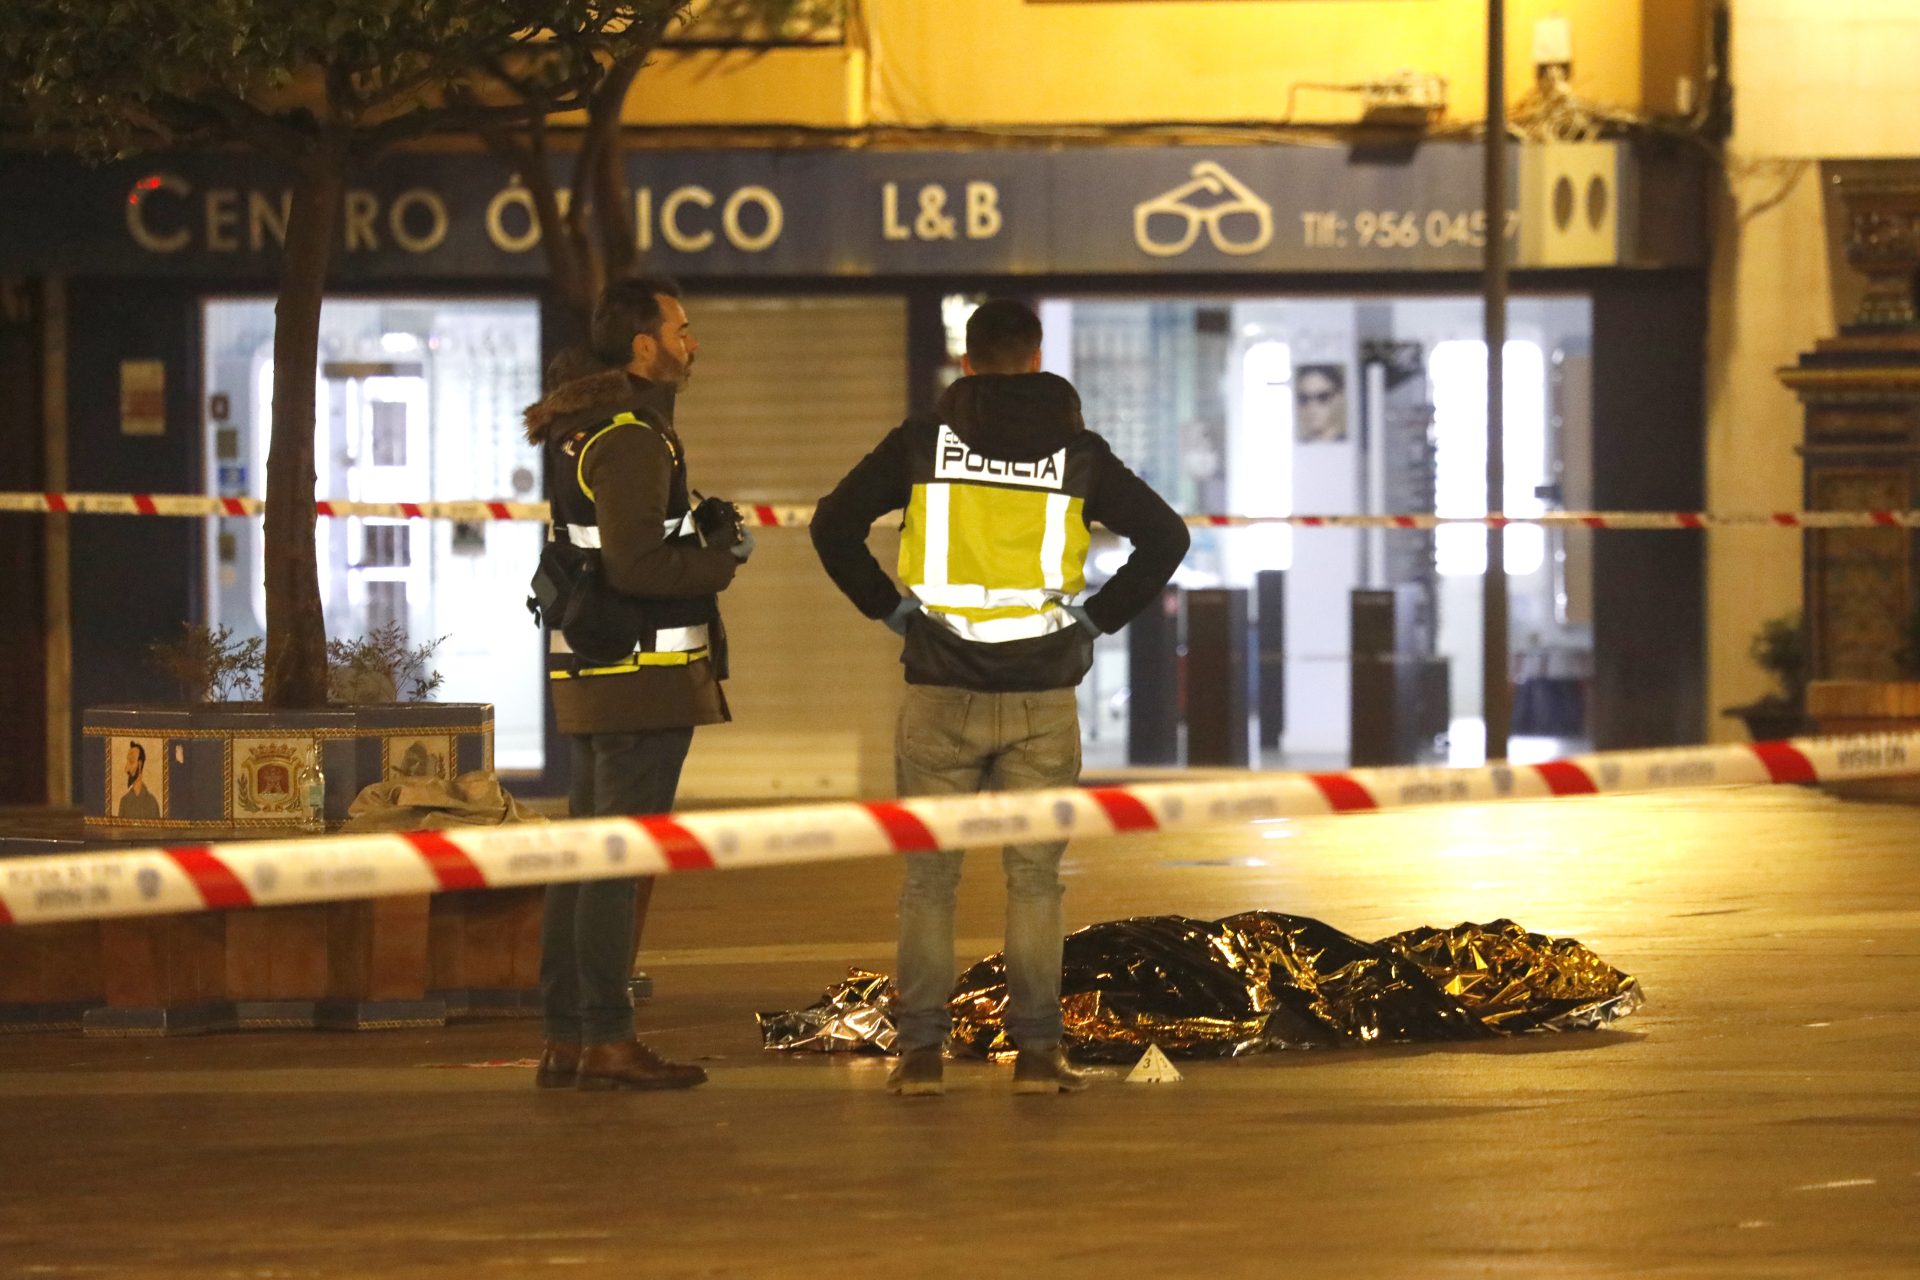 Una persona yace bajo una manta térmica la Plaza Alta de Algeciras tras irrumpir un hombre en una iglesia y apuñalar mortalmente al sacristán.